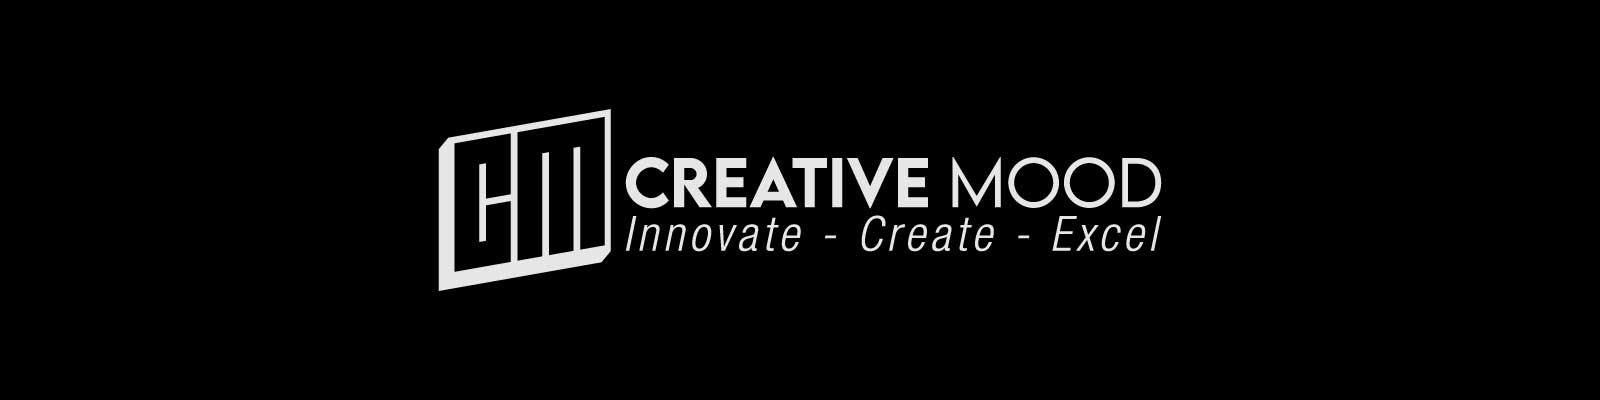 Creative Mood : Innovate - Create - Excel